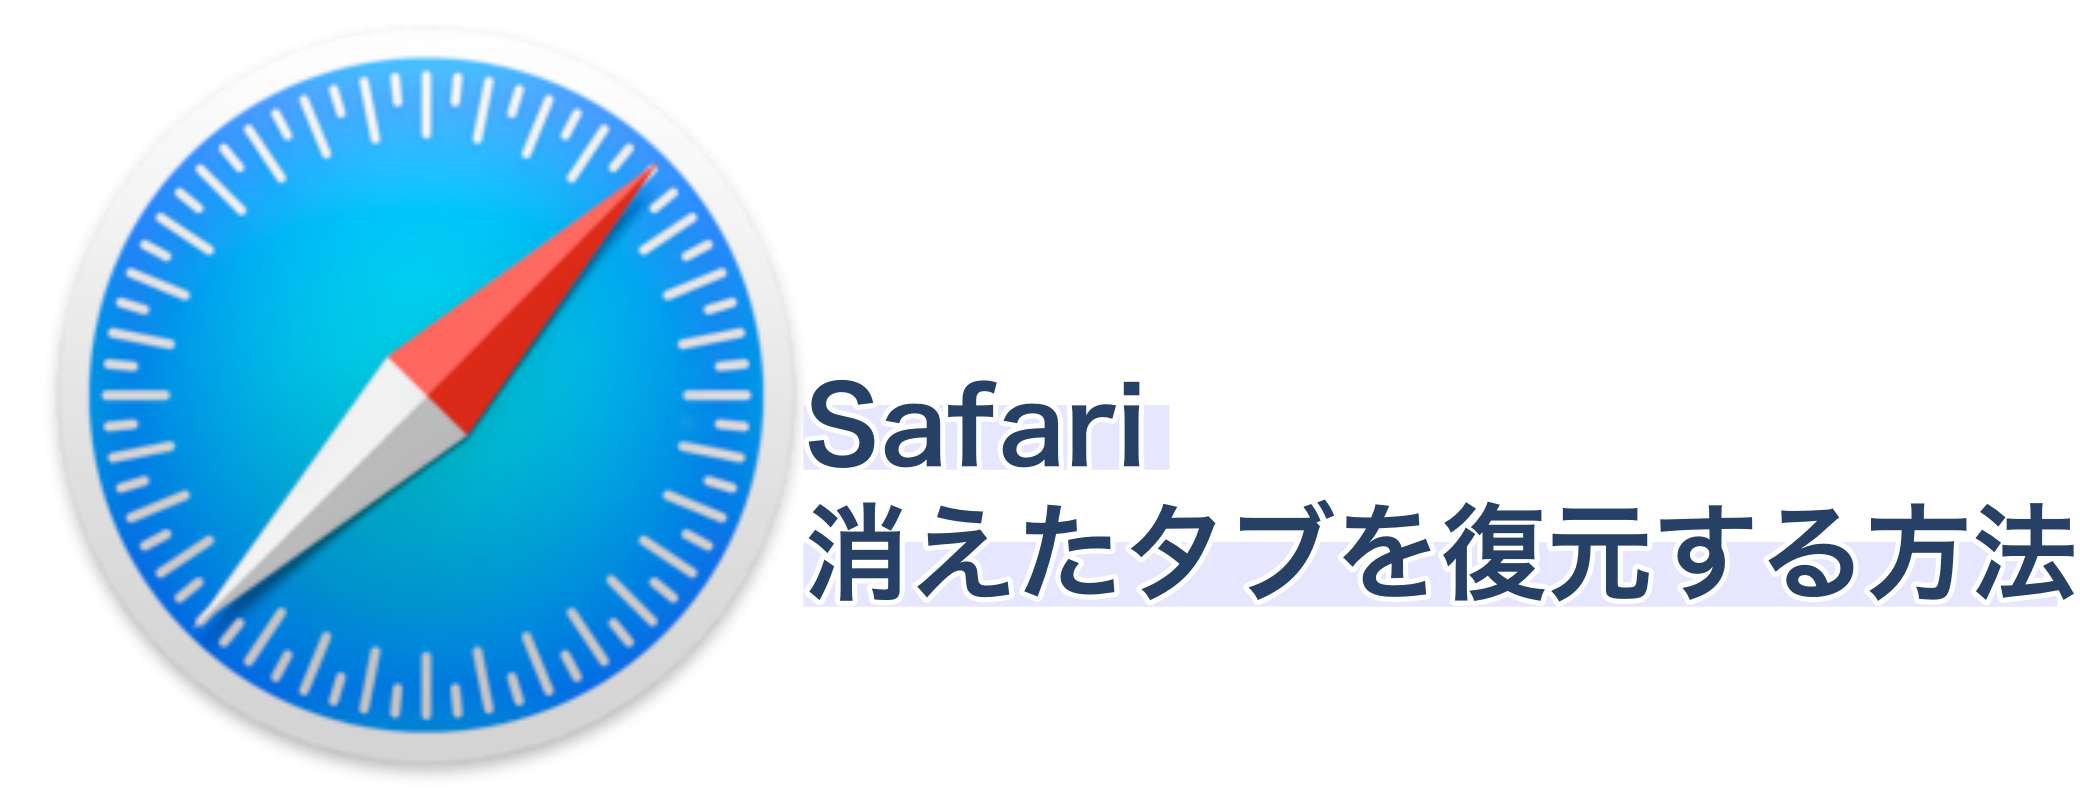 【iPhone/iPad】Safariで消えたタブを復元